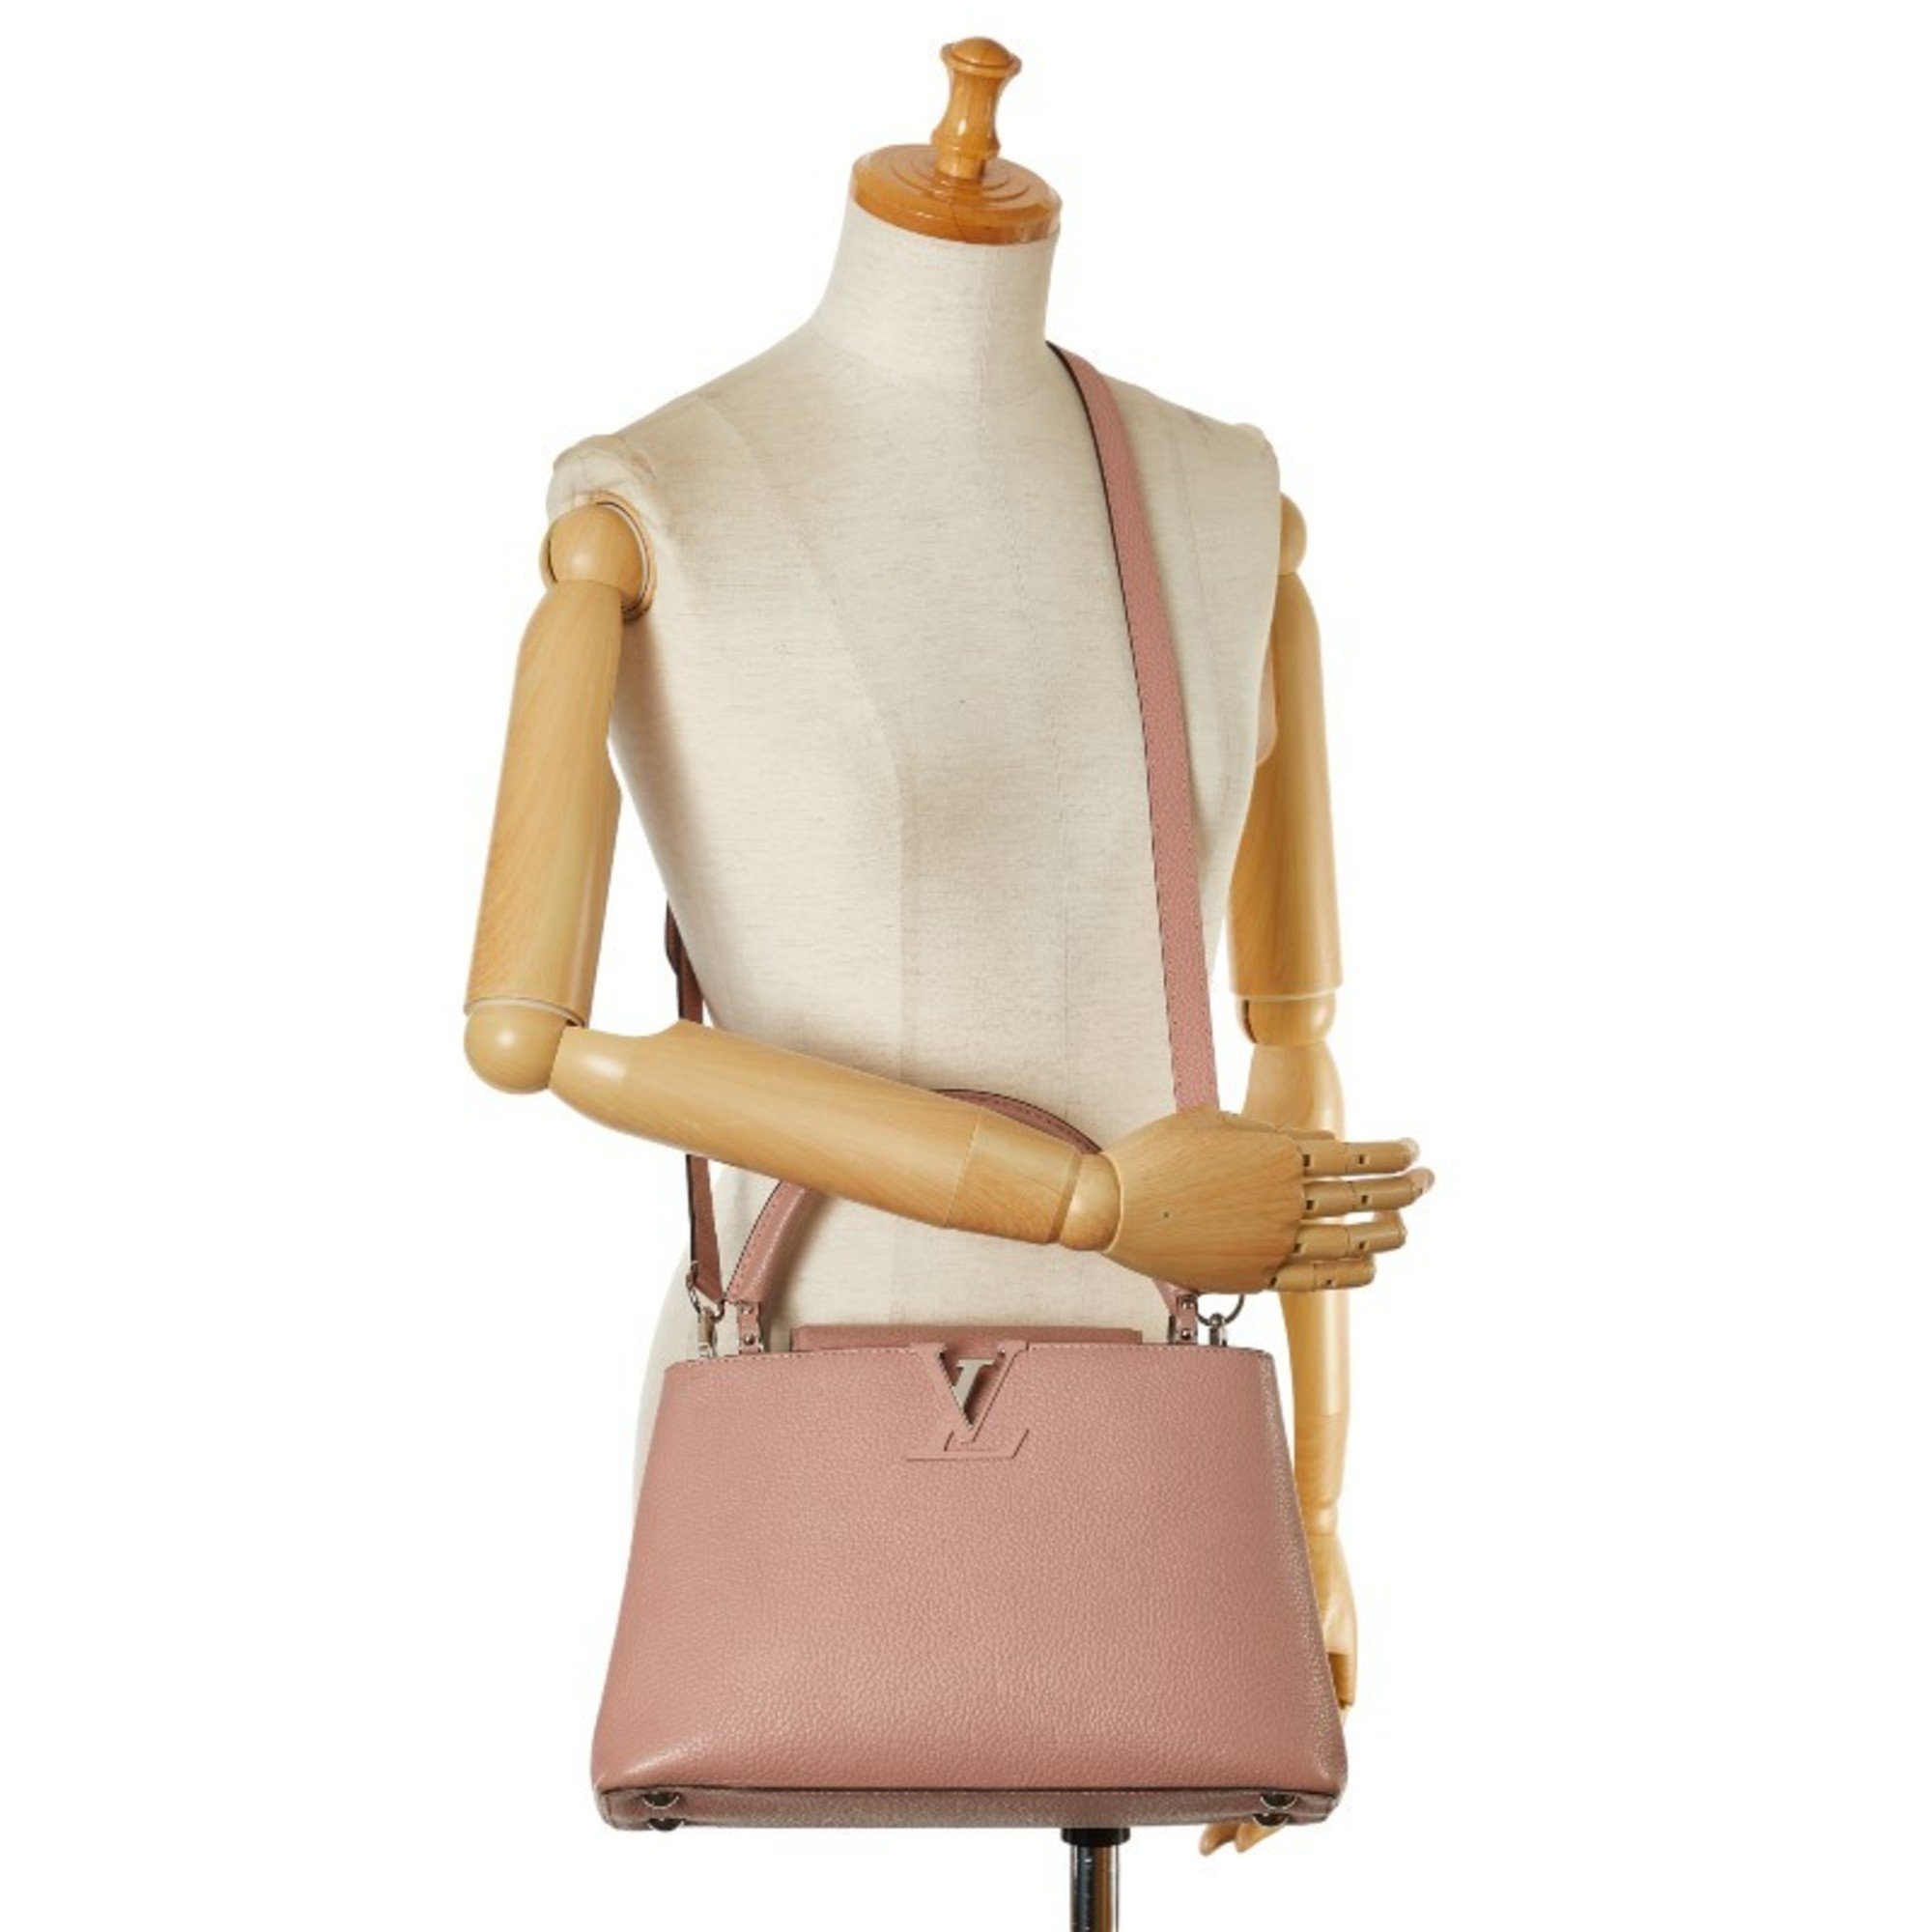 Louis Vuitton Capucines PM Handbag Shoulder Bag M42258 Magnolia Pink Taurillon Leather Women's LOUIS VUITTON